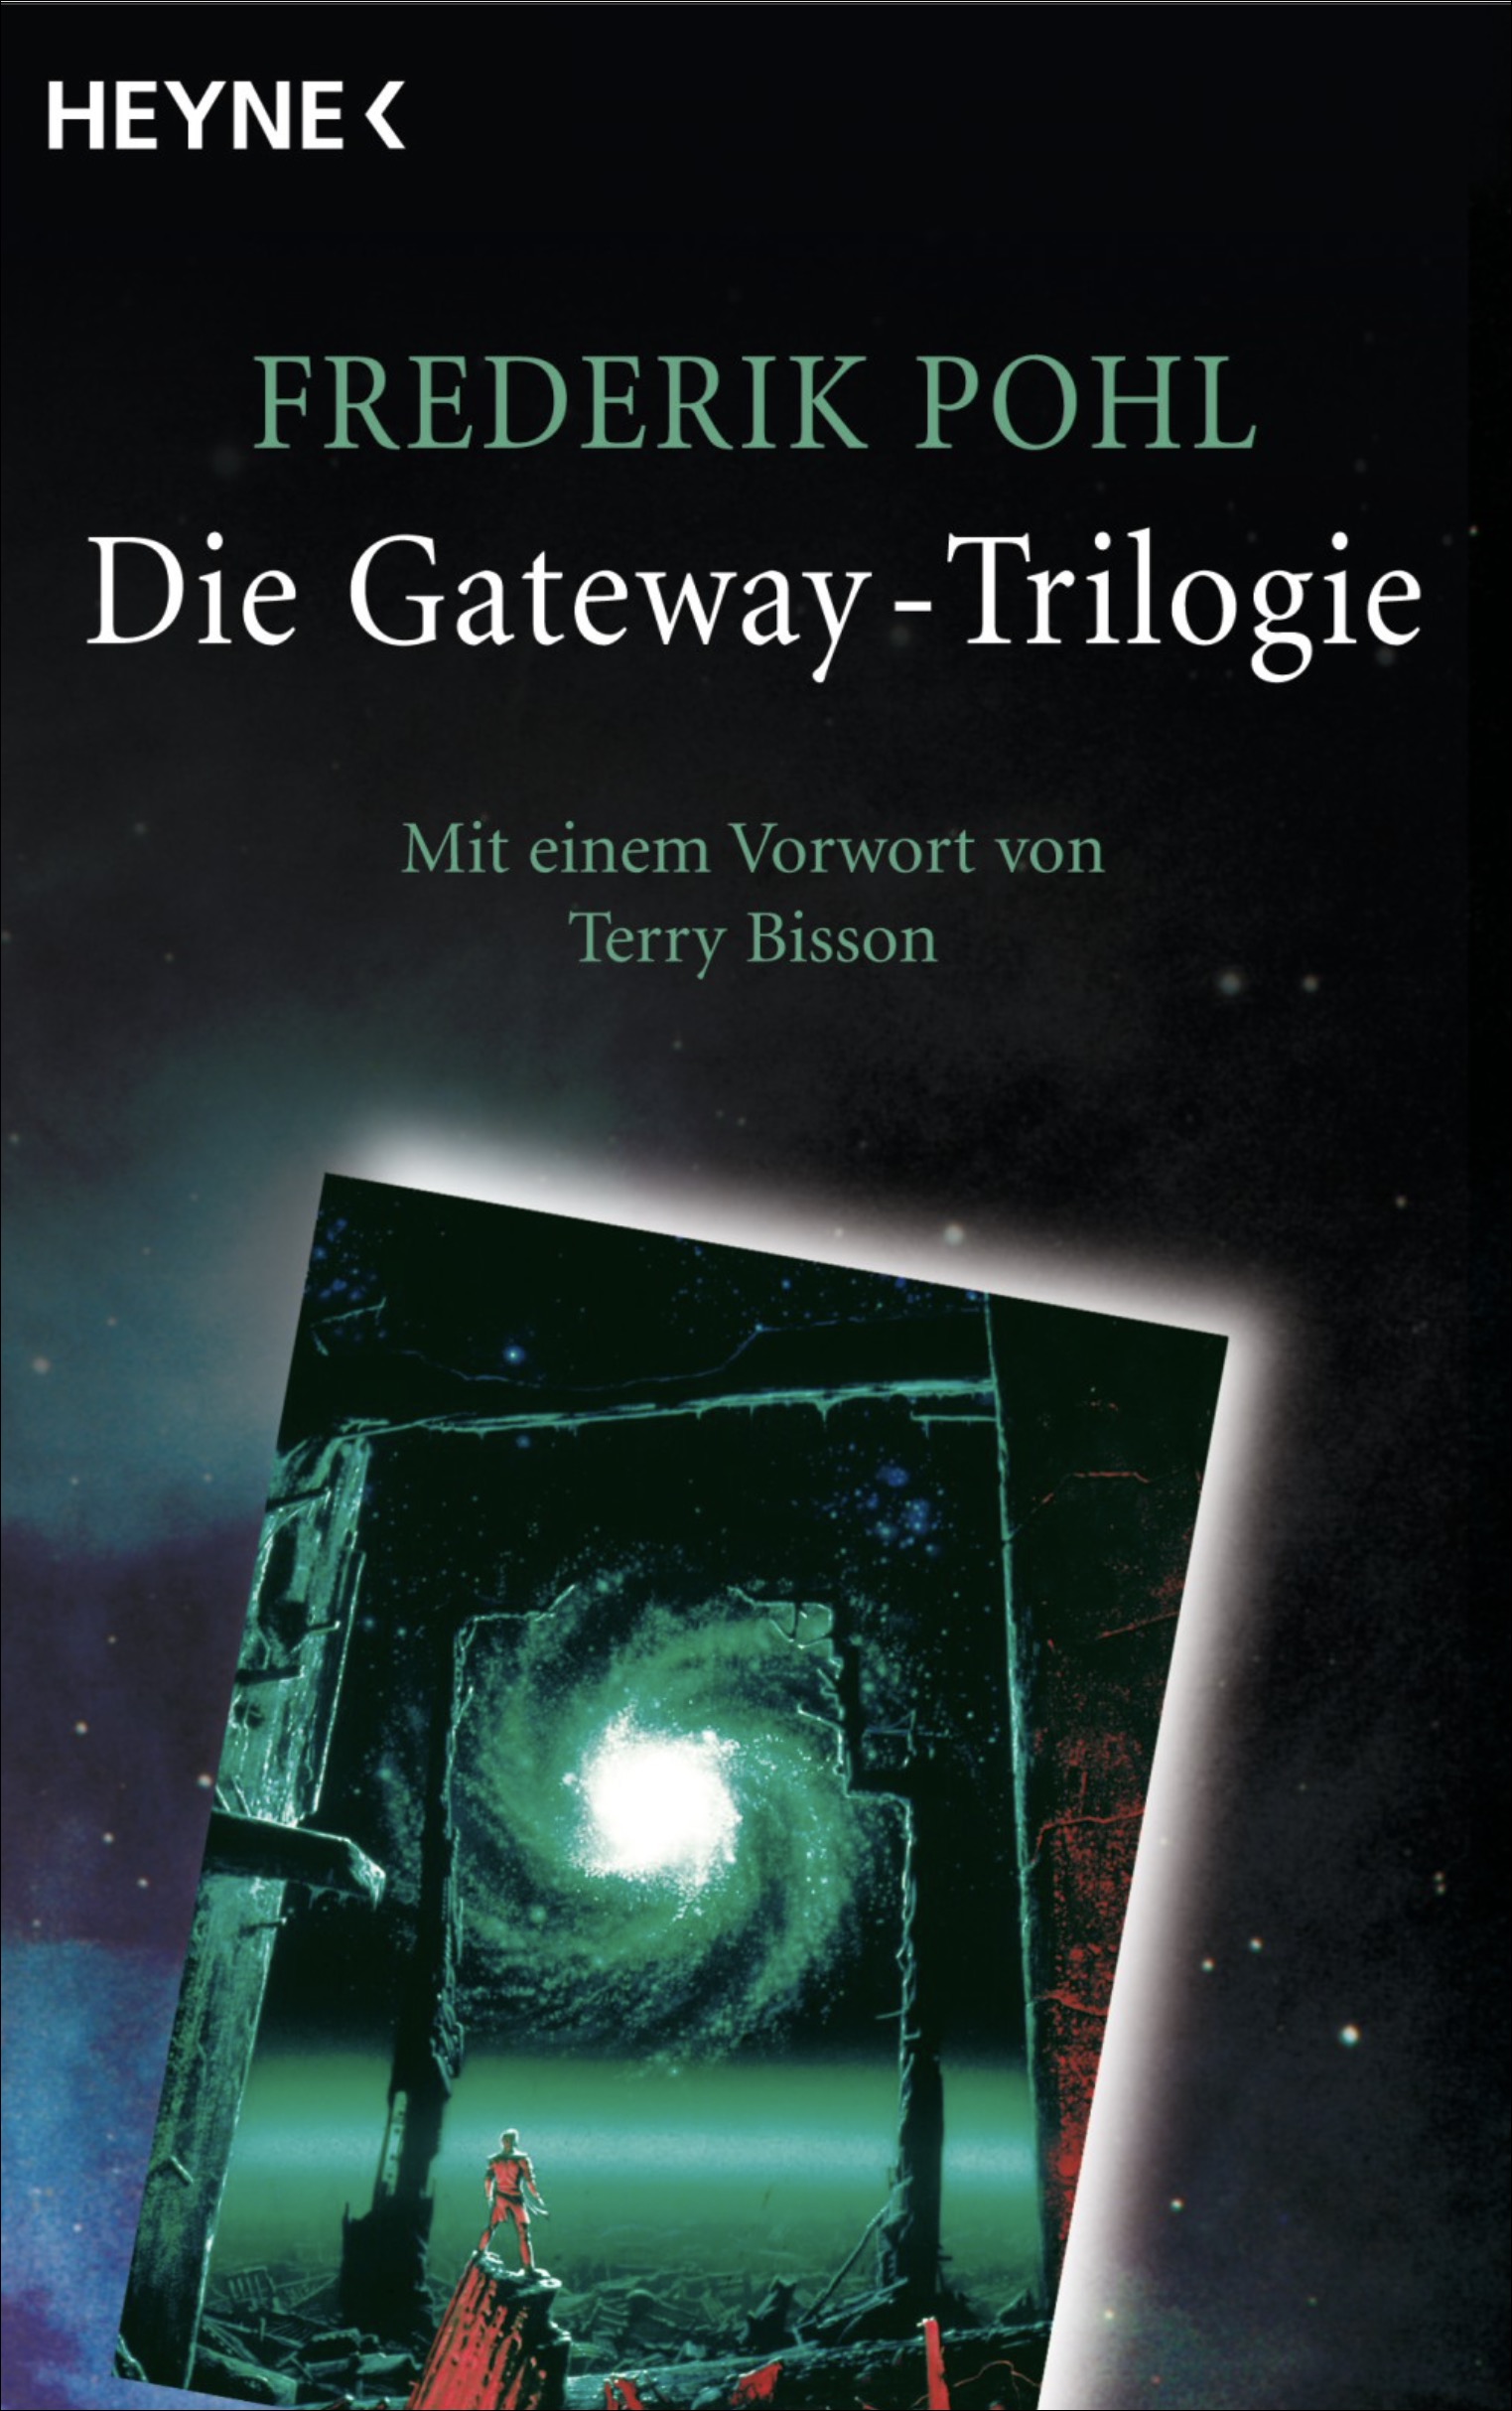 Frederik Pohl – Die Gateway-Trilogie, erschienen im Heyne-Verlag